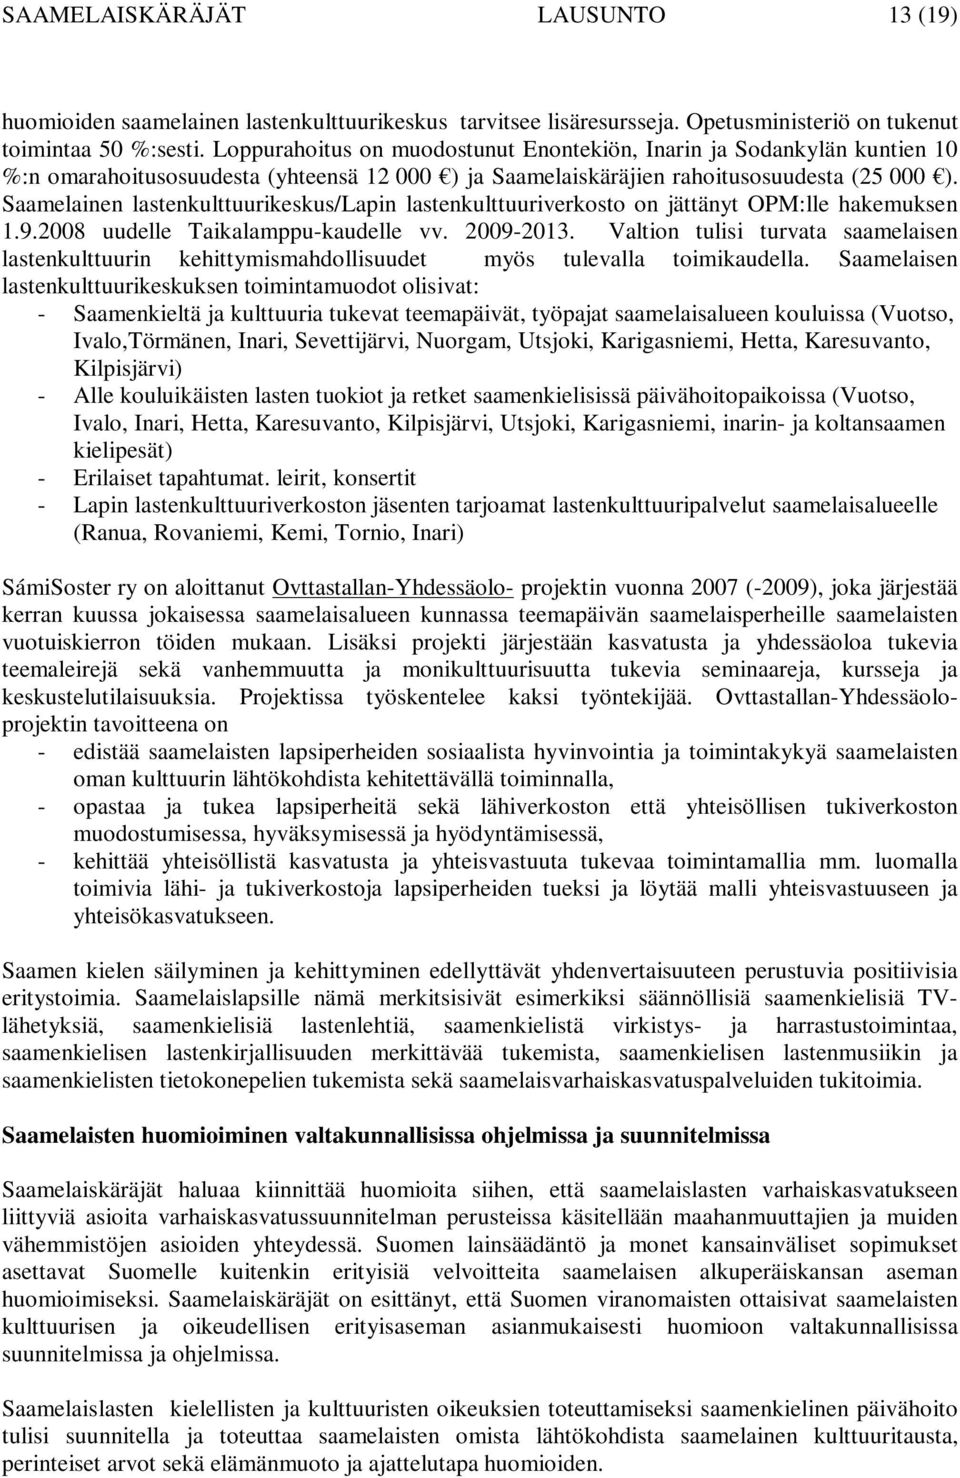 Saamelainen lastenkulttuurikeskus/lapin lastenkulttuuriverkosto on jättänyt OPM:lle hakemuksen 1.9.2008 uudelle Taikalamppu-kaudelle vv. 2009-2013.